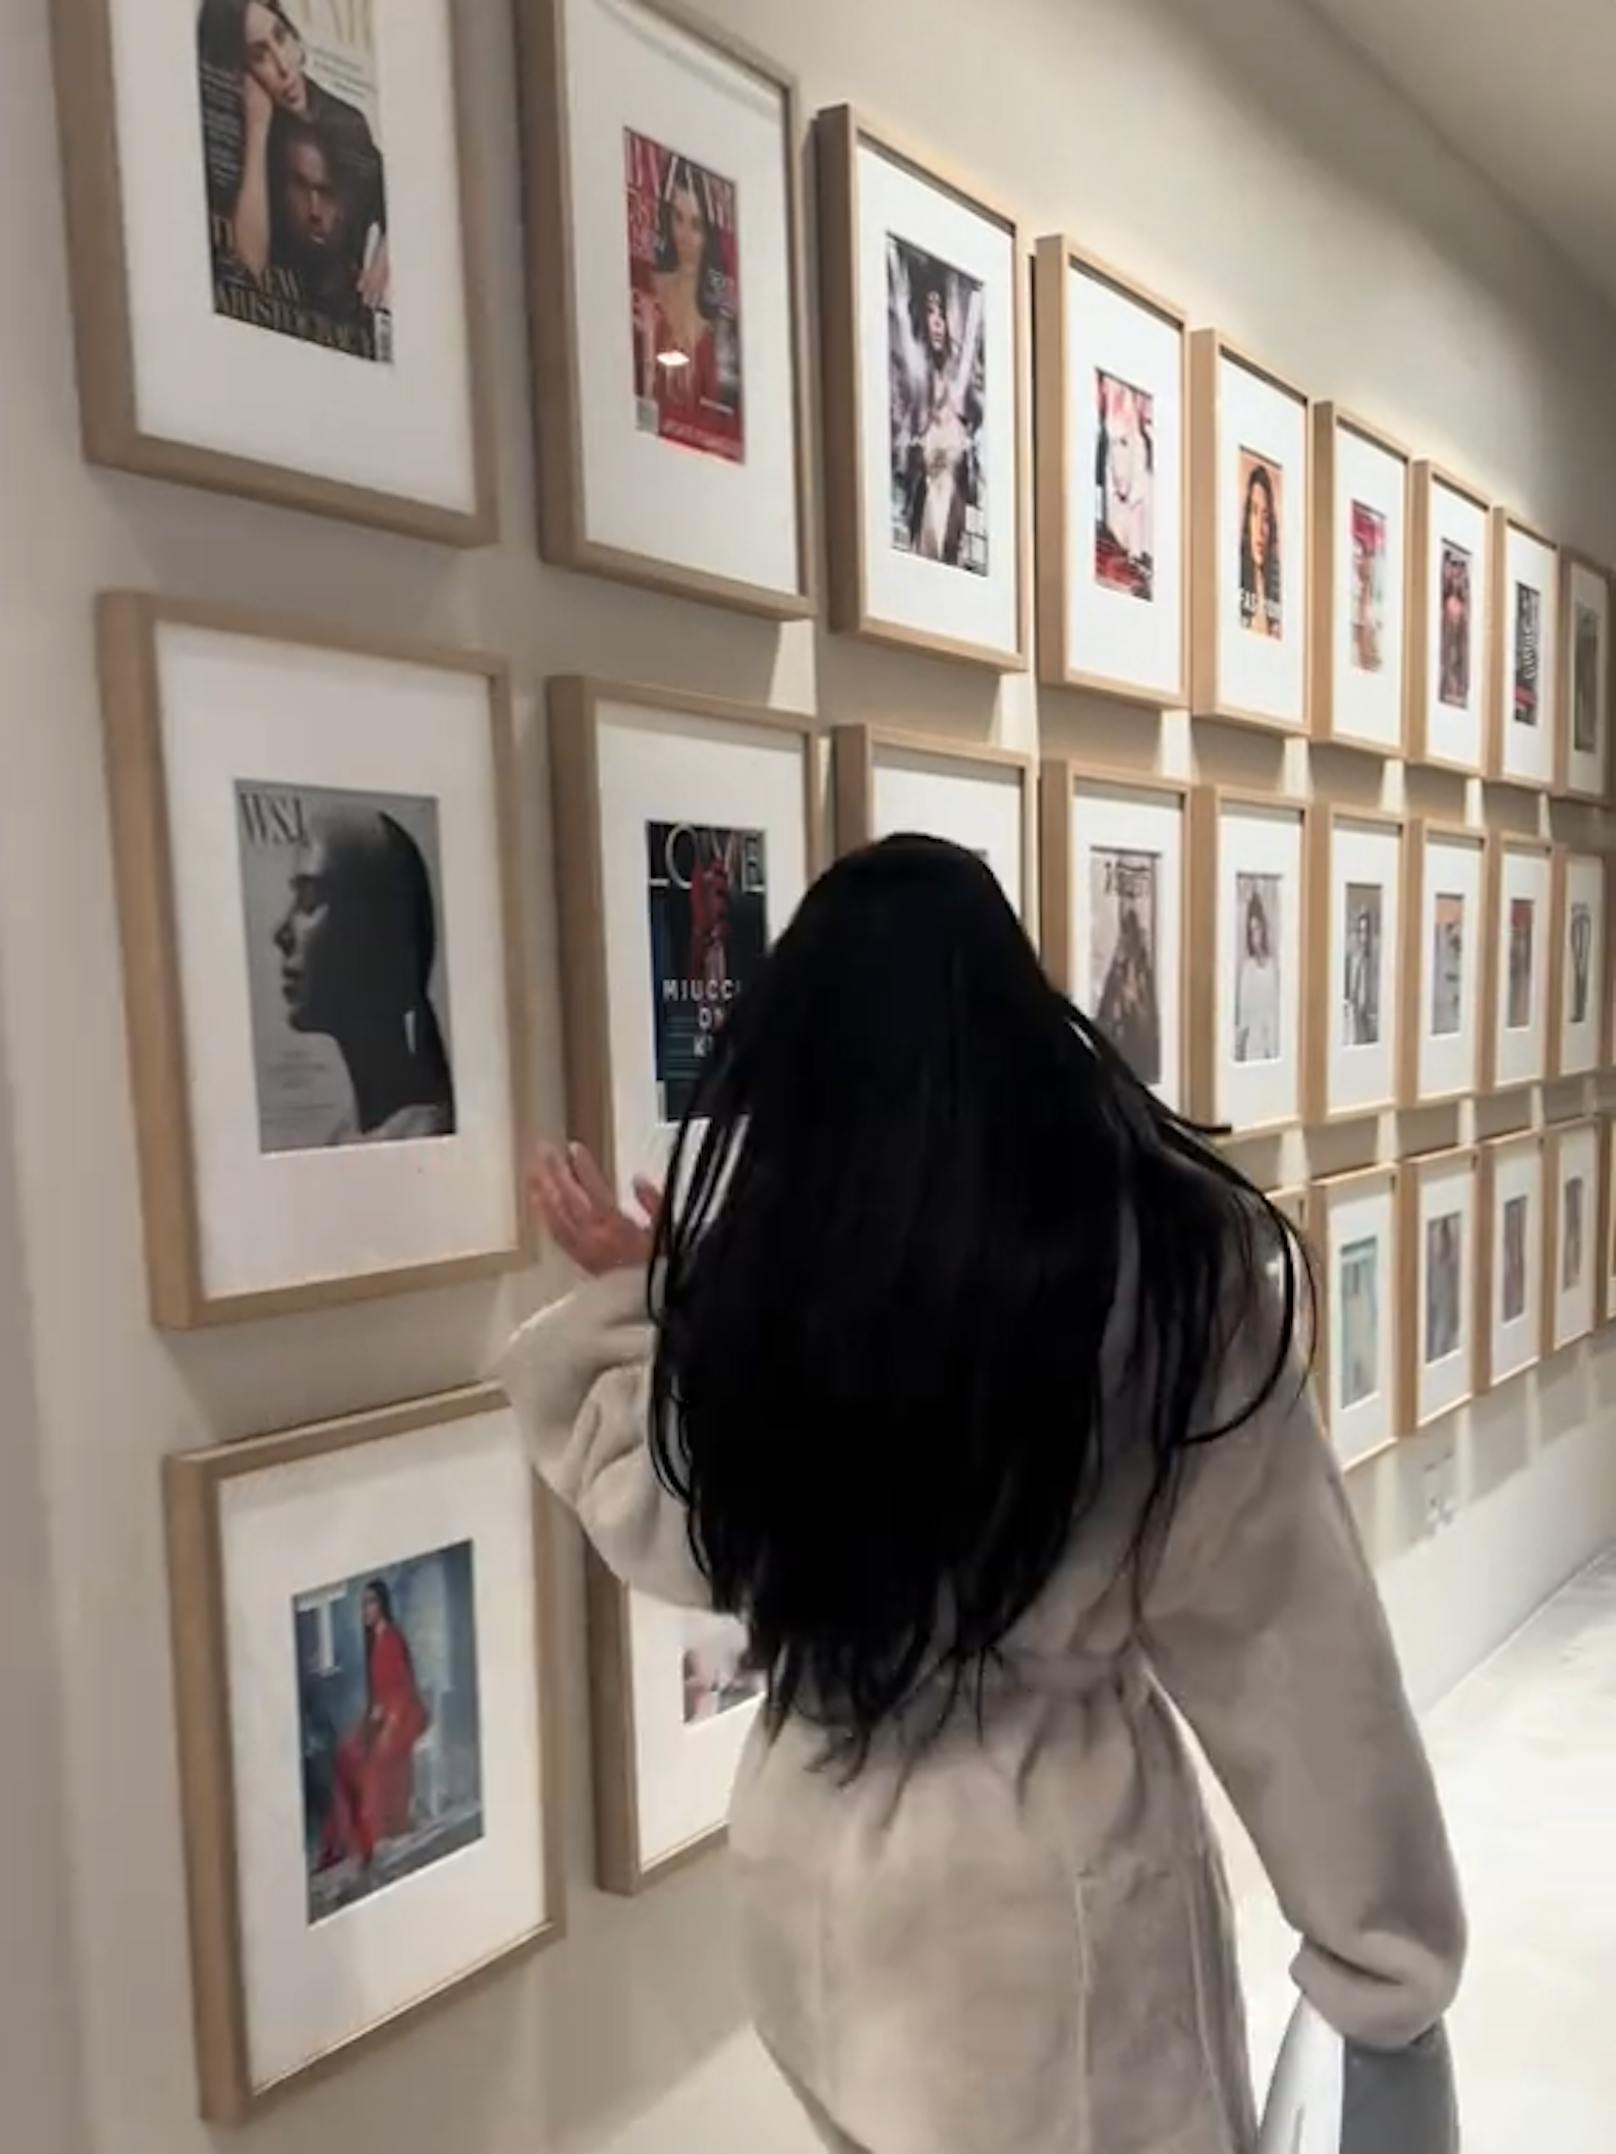 Kim hat eine Wand voller Bilderrahmen mit ihren Titelbildern.